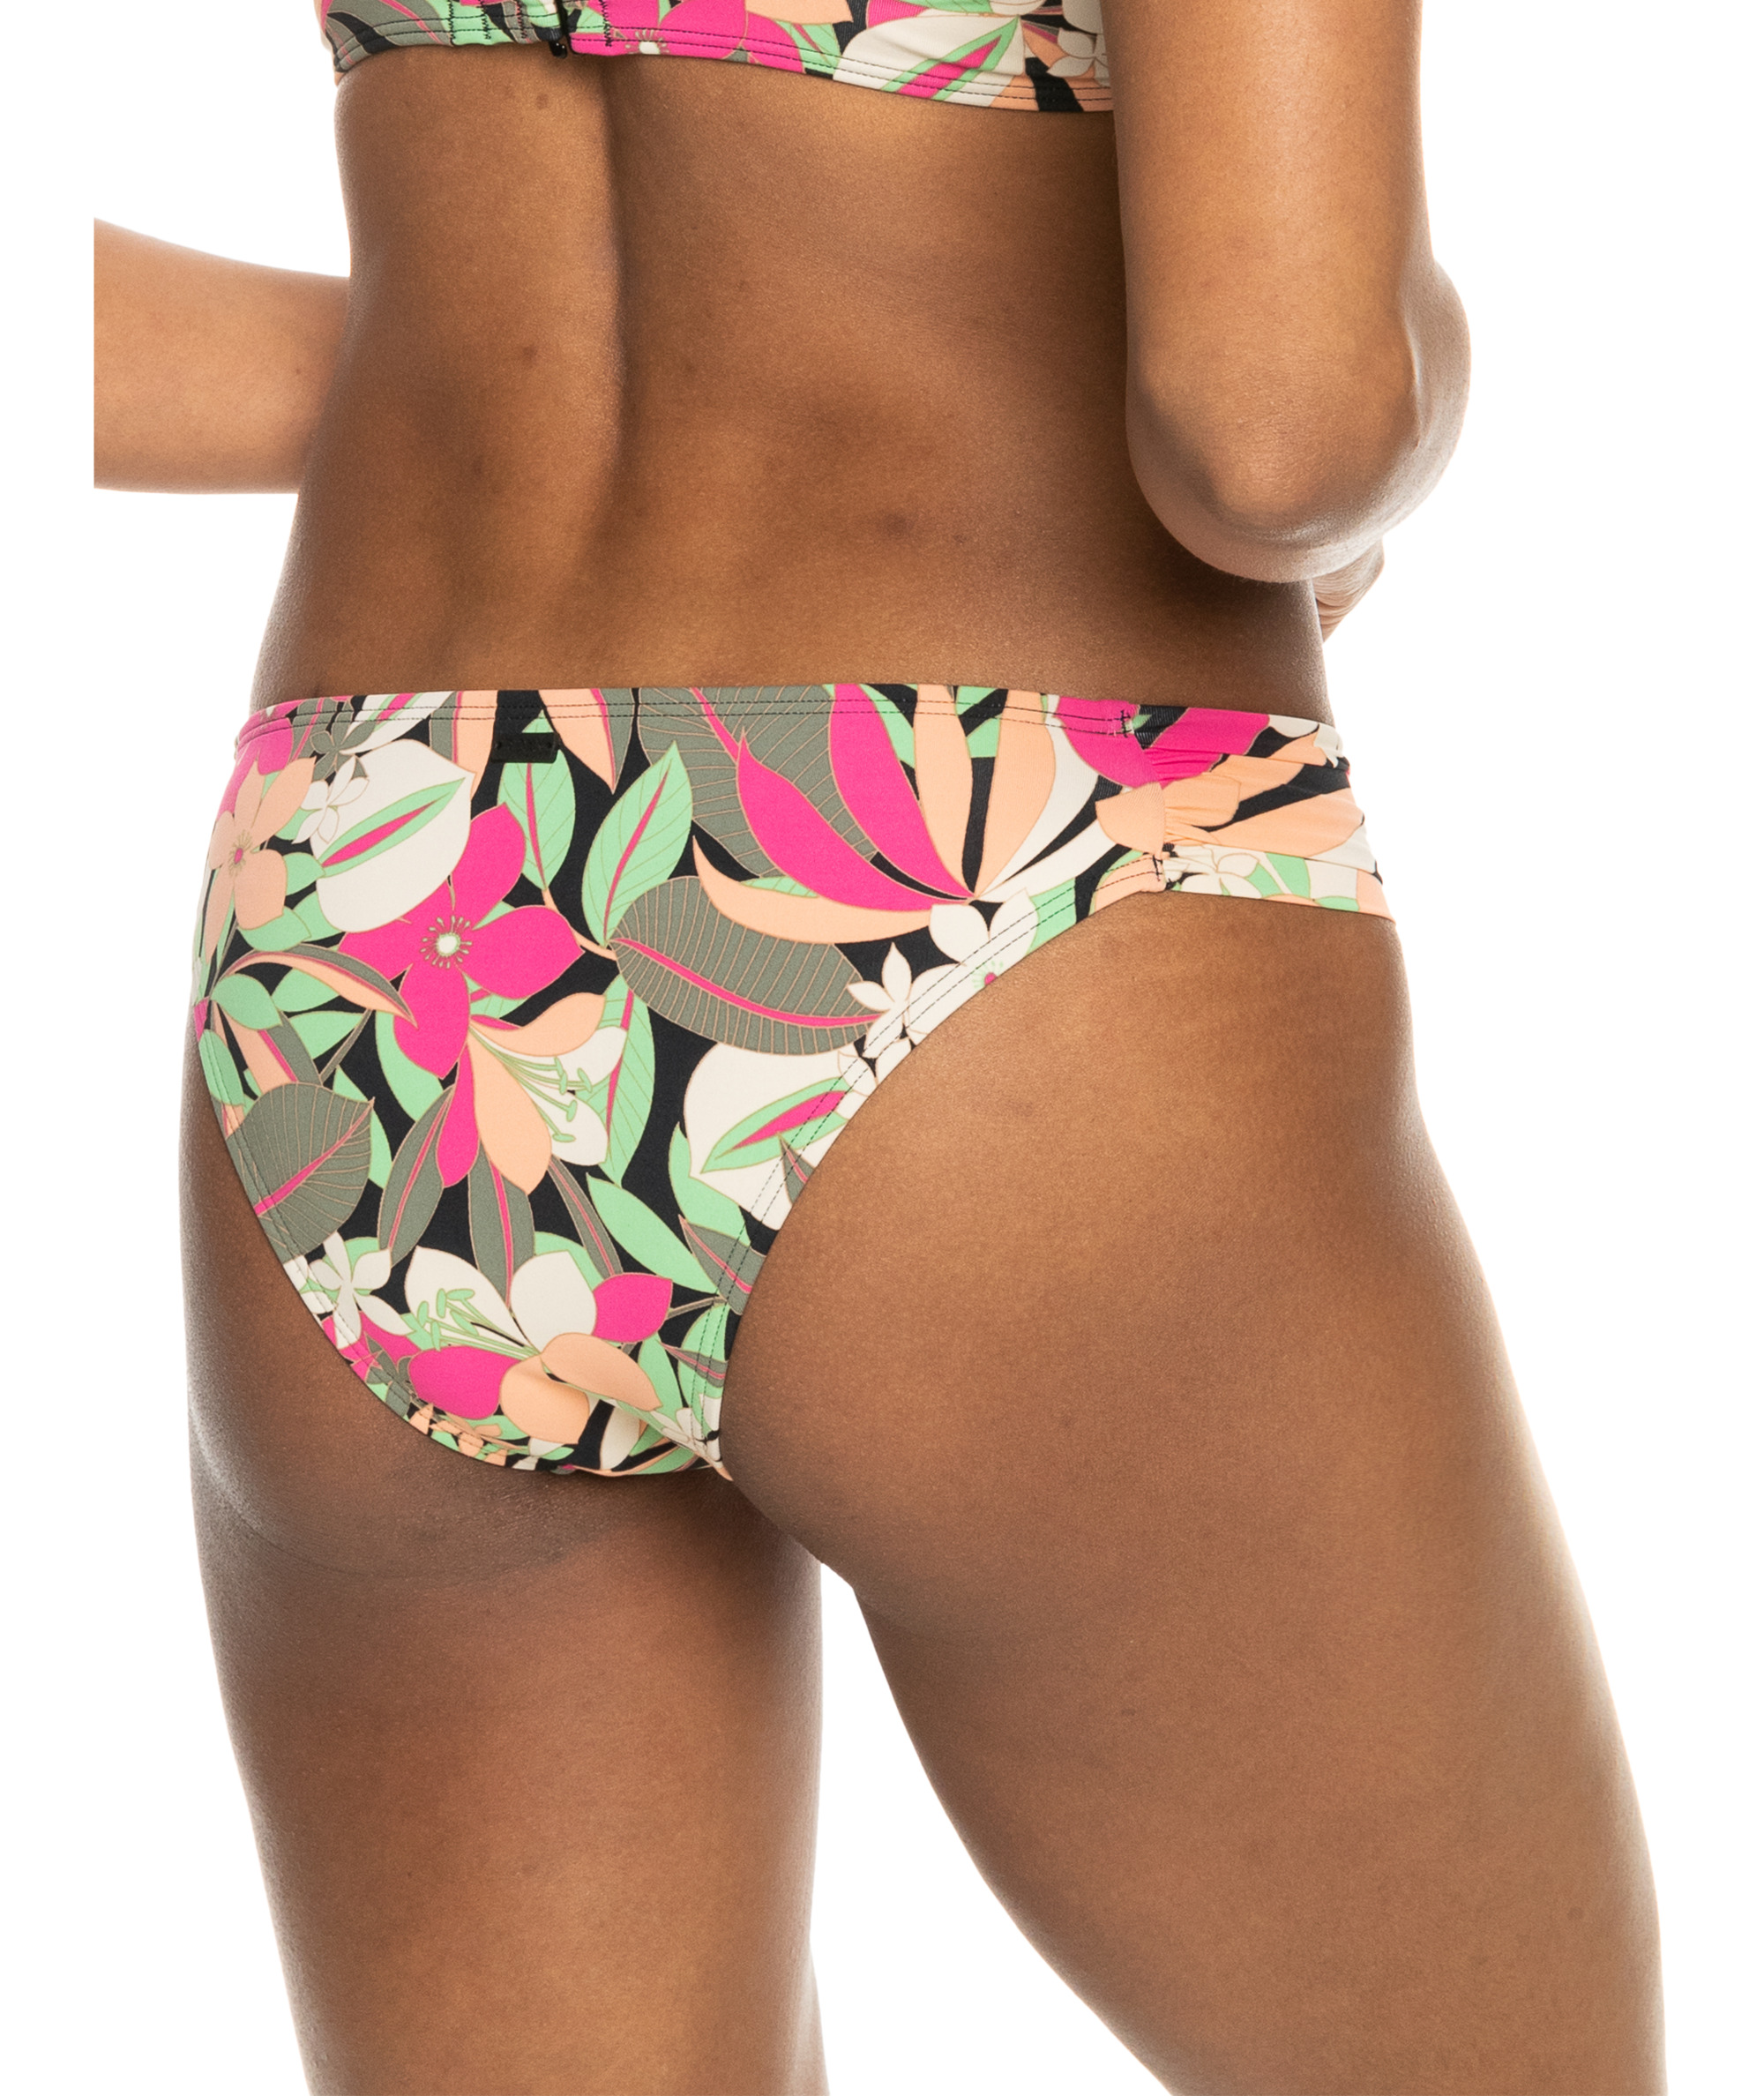 ROXY Printed Beach Classics - Bikinihose mit mittlerer Bedeckung 10734402